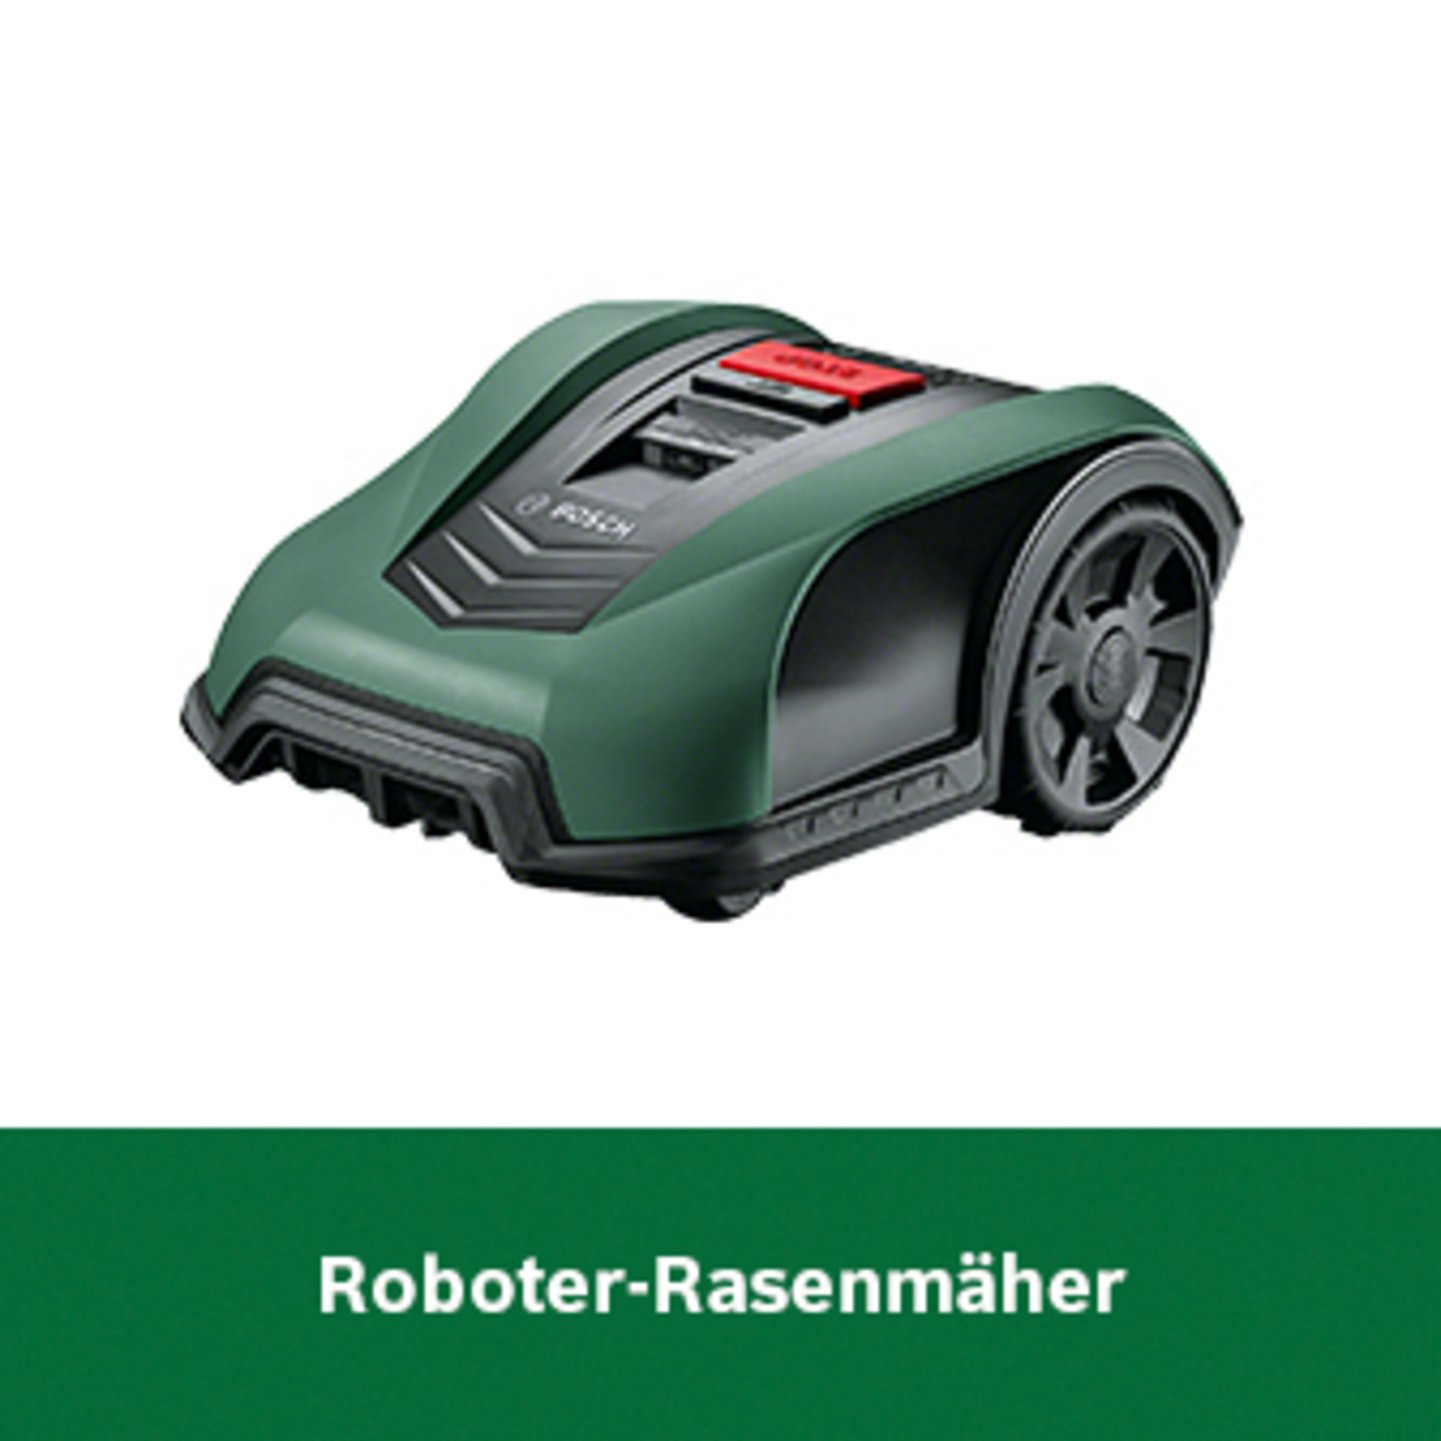 Bosch Roboter-Rasenmäher